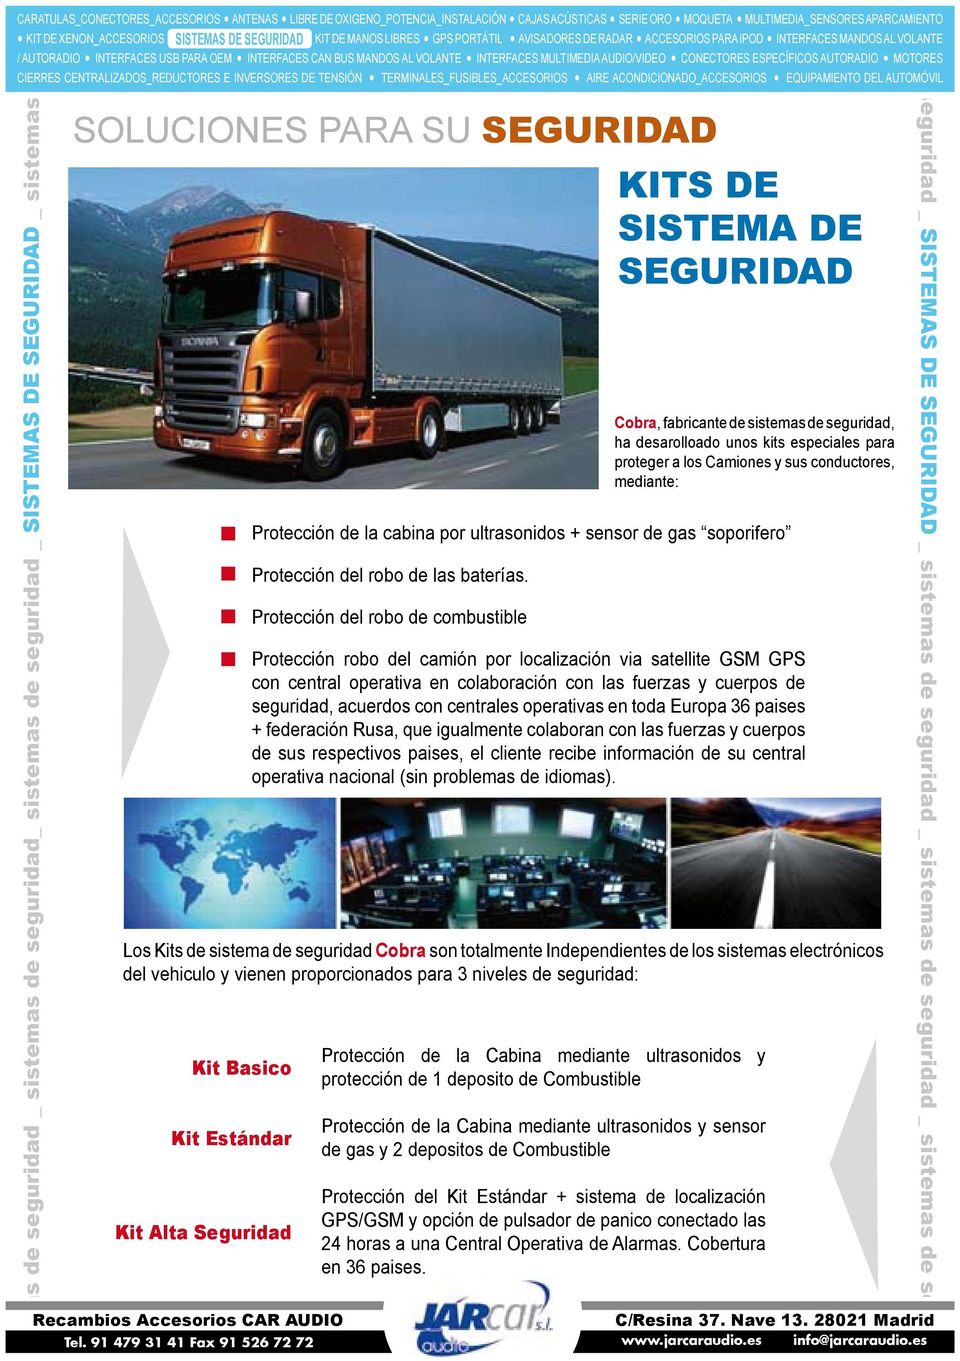 Protección del robo de combustible Protección robo del camión por localización via satellite GSM GPS con central operativa en colaboración con las fuerzas y cuerpos de seguridad, acuerdos con